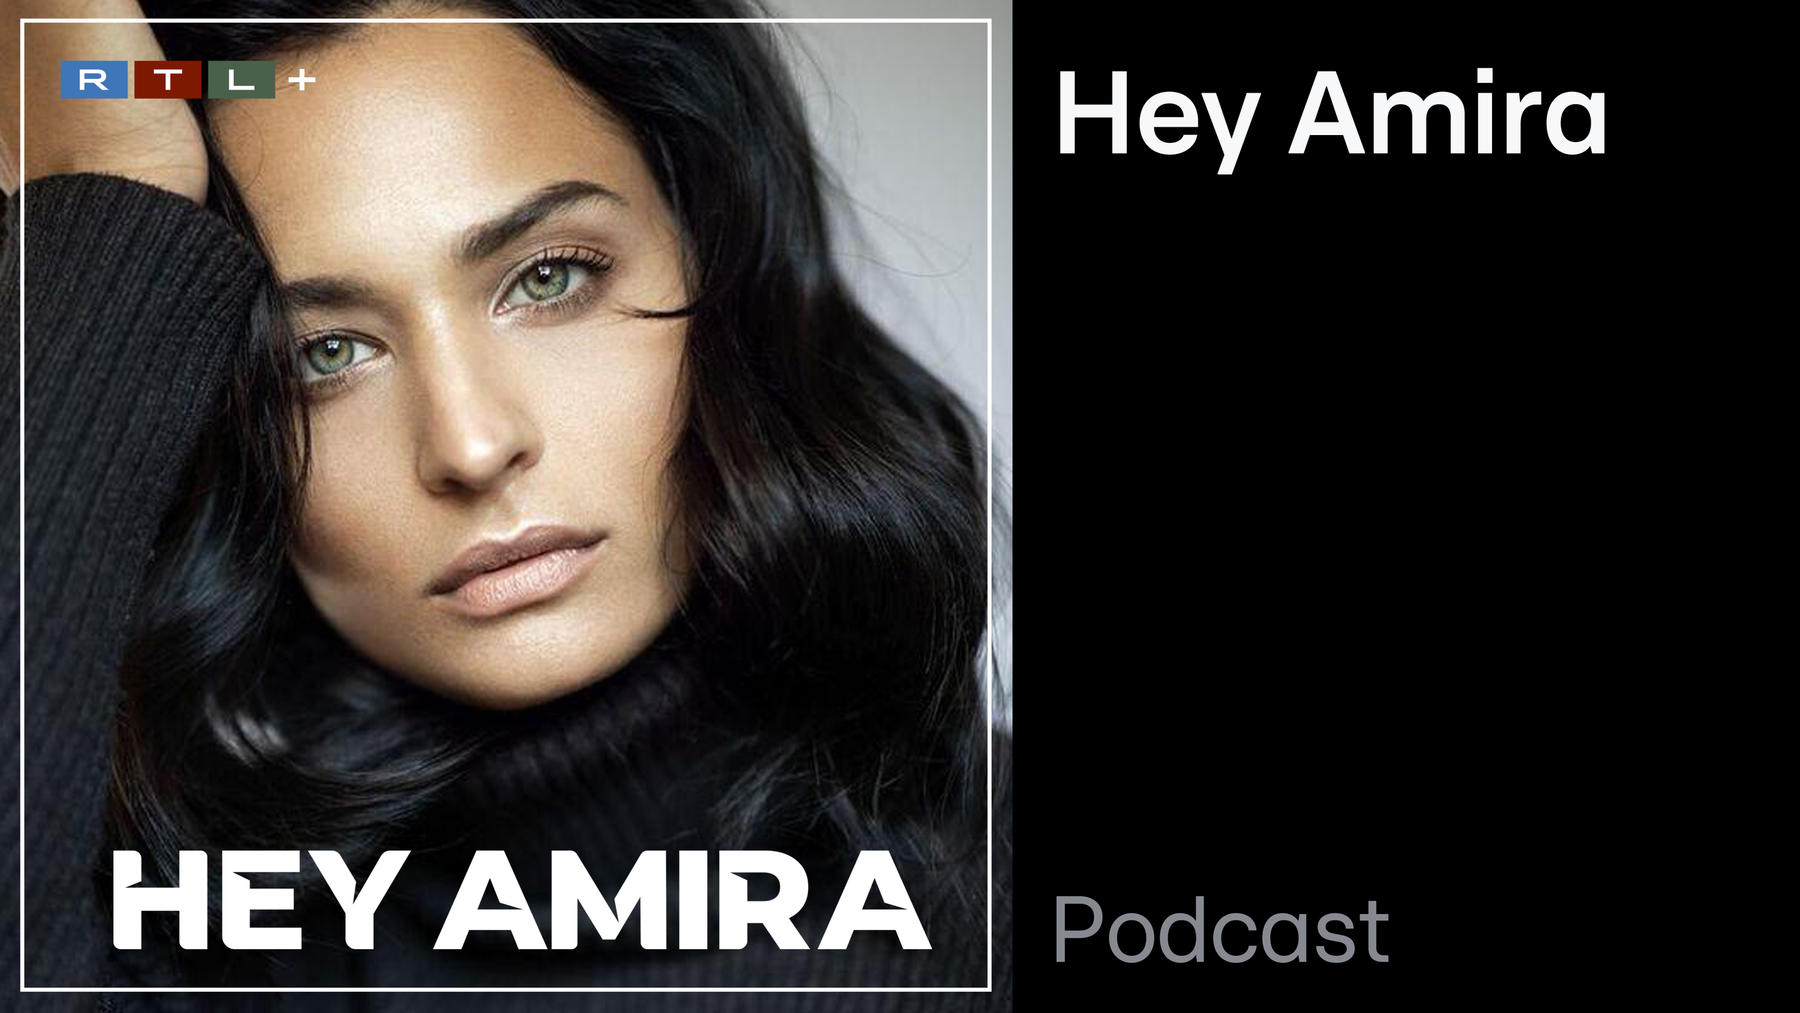 Podcast: Hey Amira